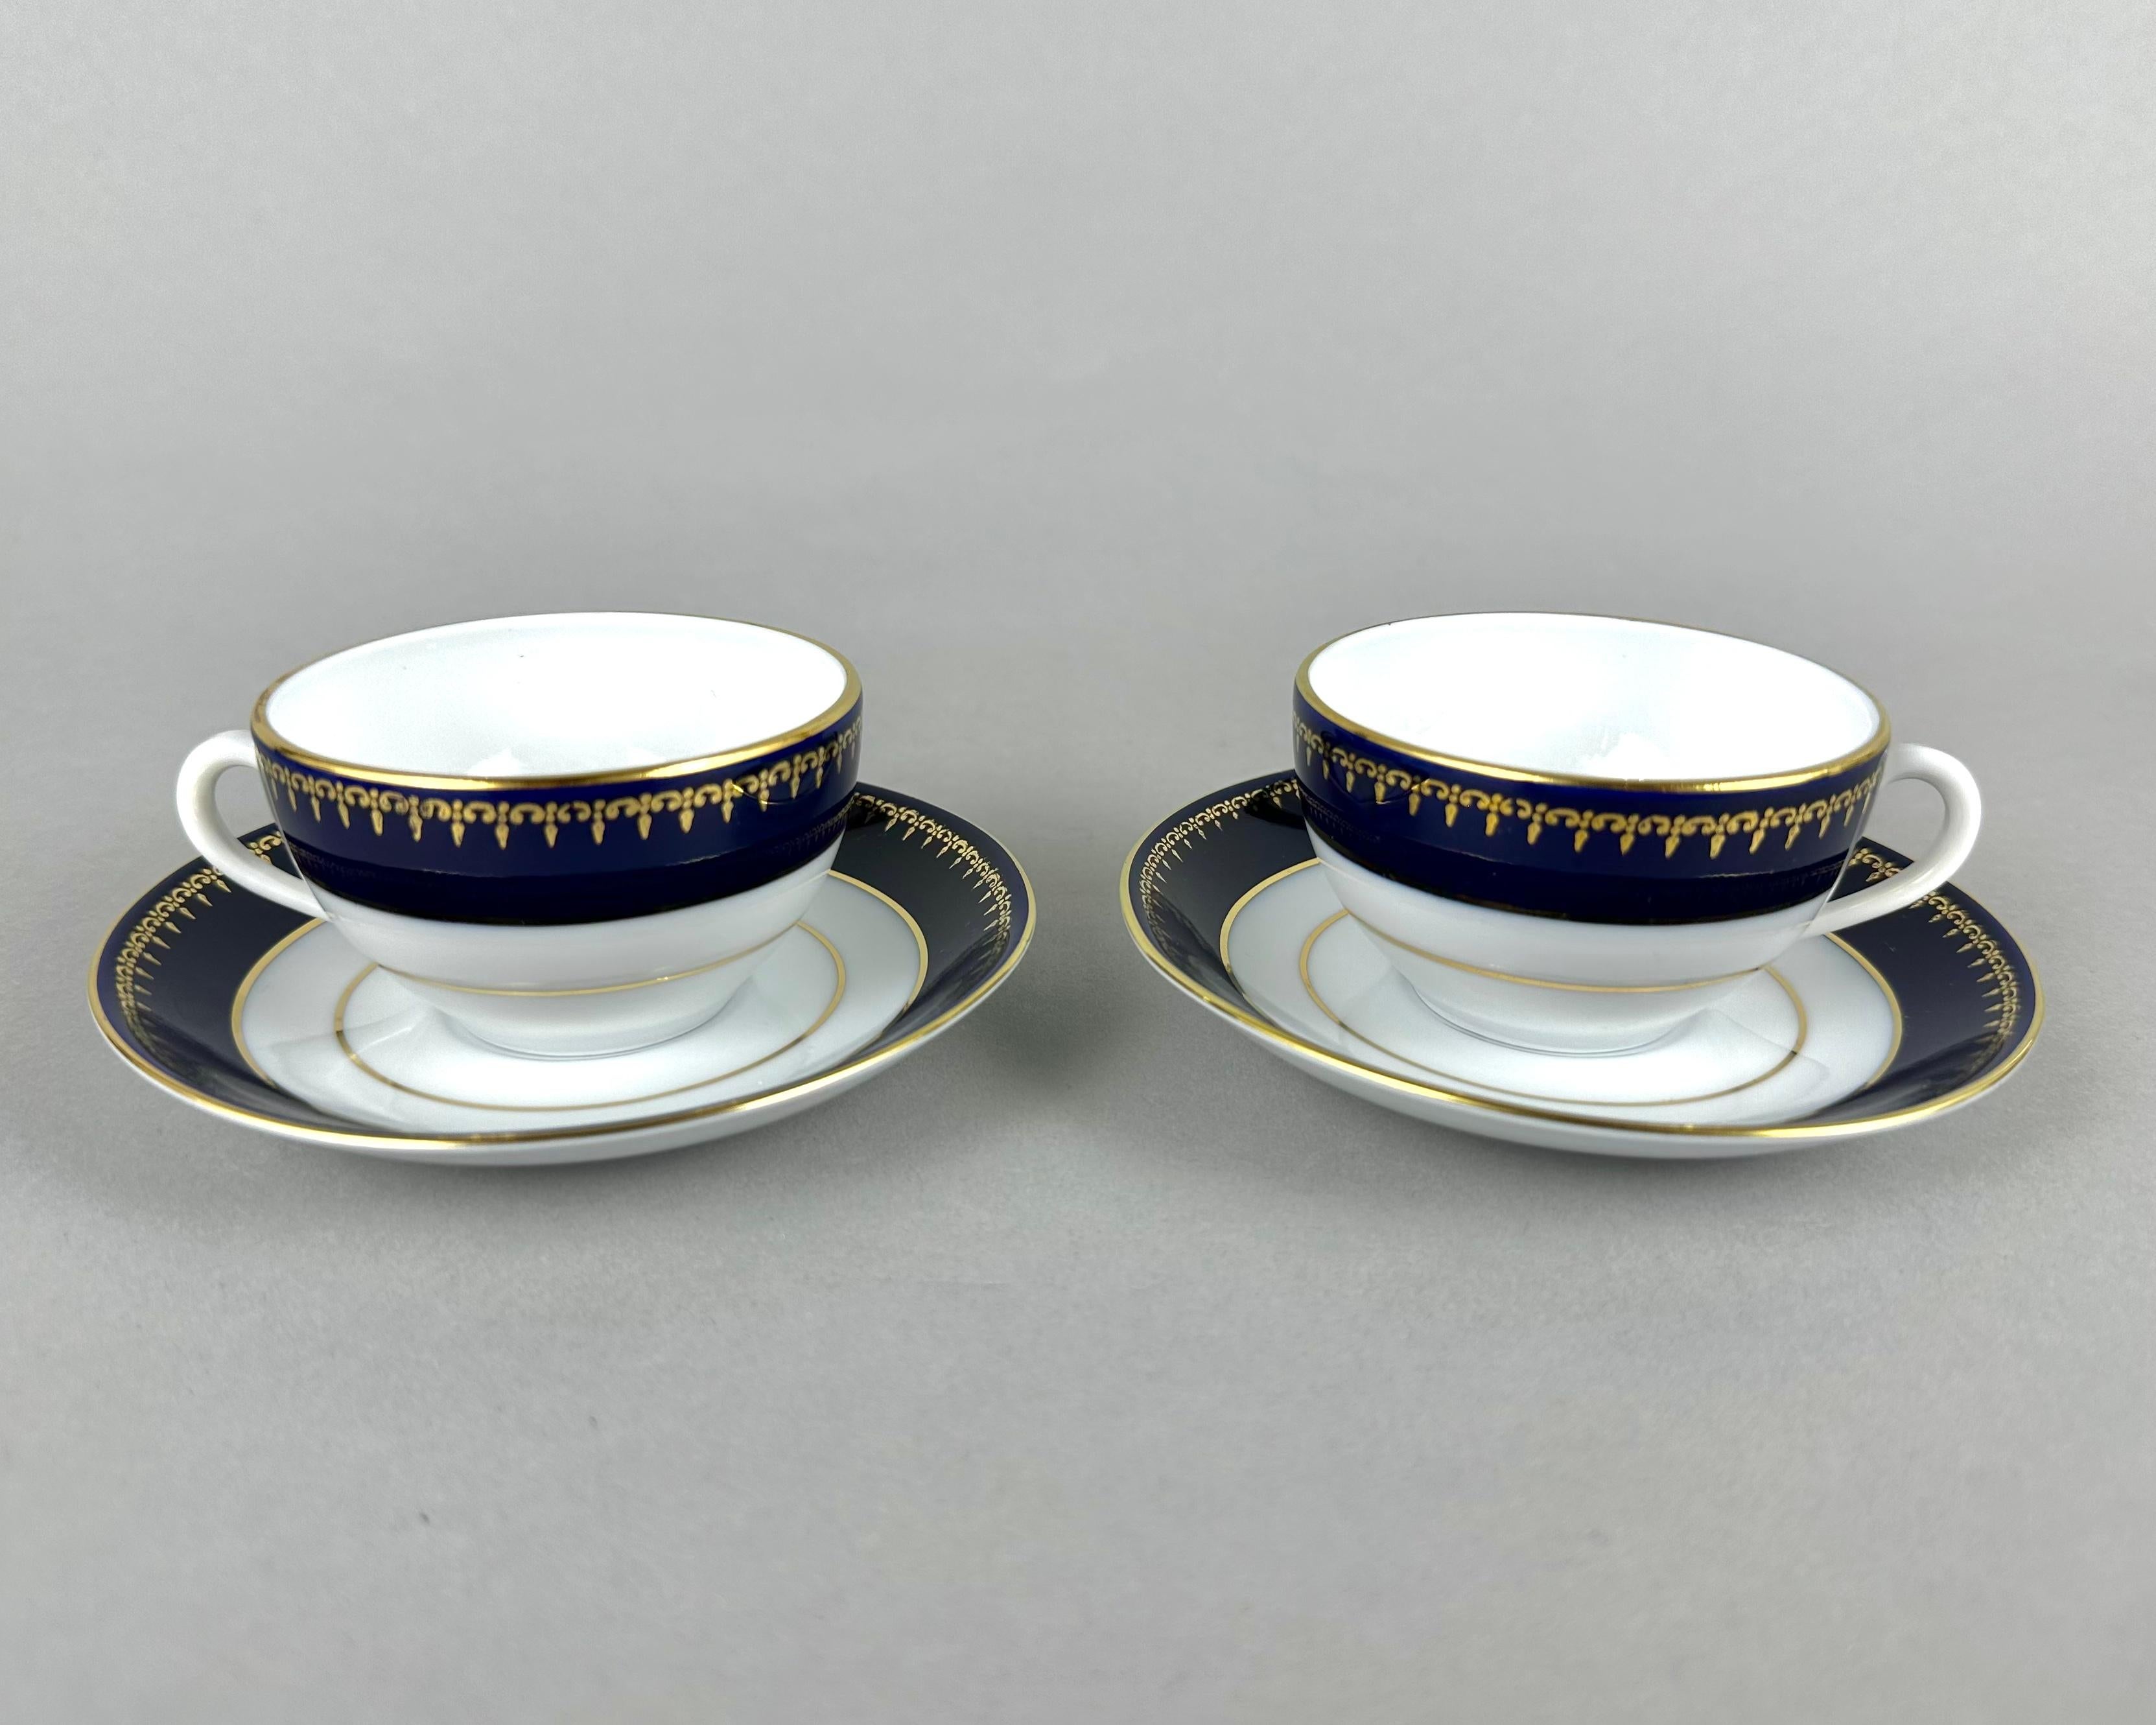 Service à café ou à thé en porcelaine vintage de Zsolney Manufacturer, Hongrie, années 1960.

Whiting se compose de 14 pièces en porcelaine de couleur blanc cassé avec des bords bleu cobalt et or.

Zsolnay crée de la porcelaine peinte à la main